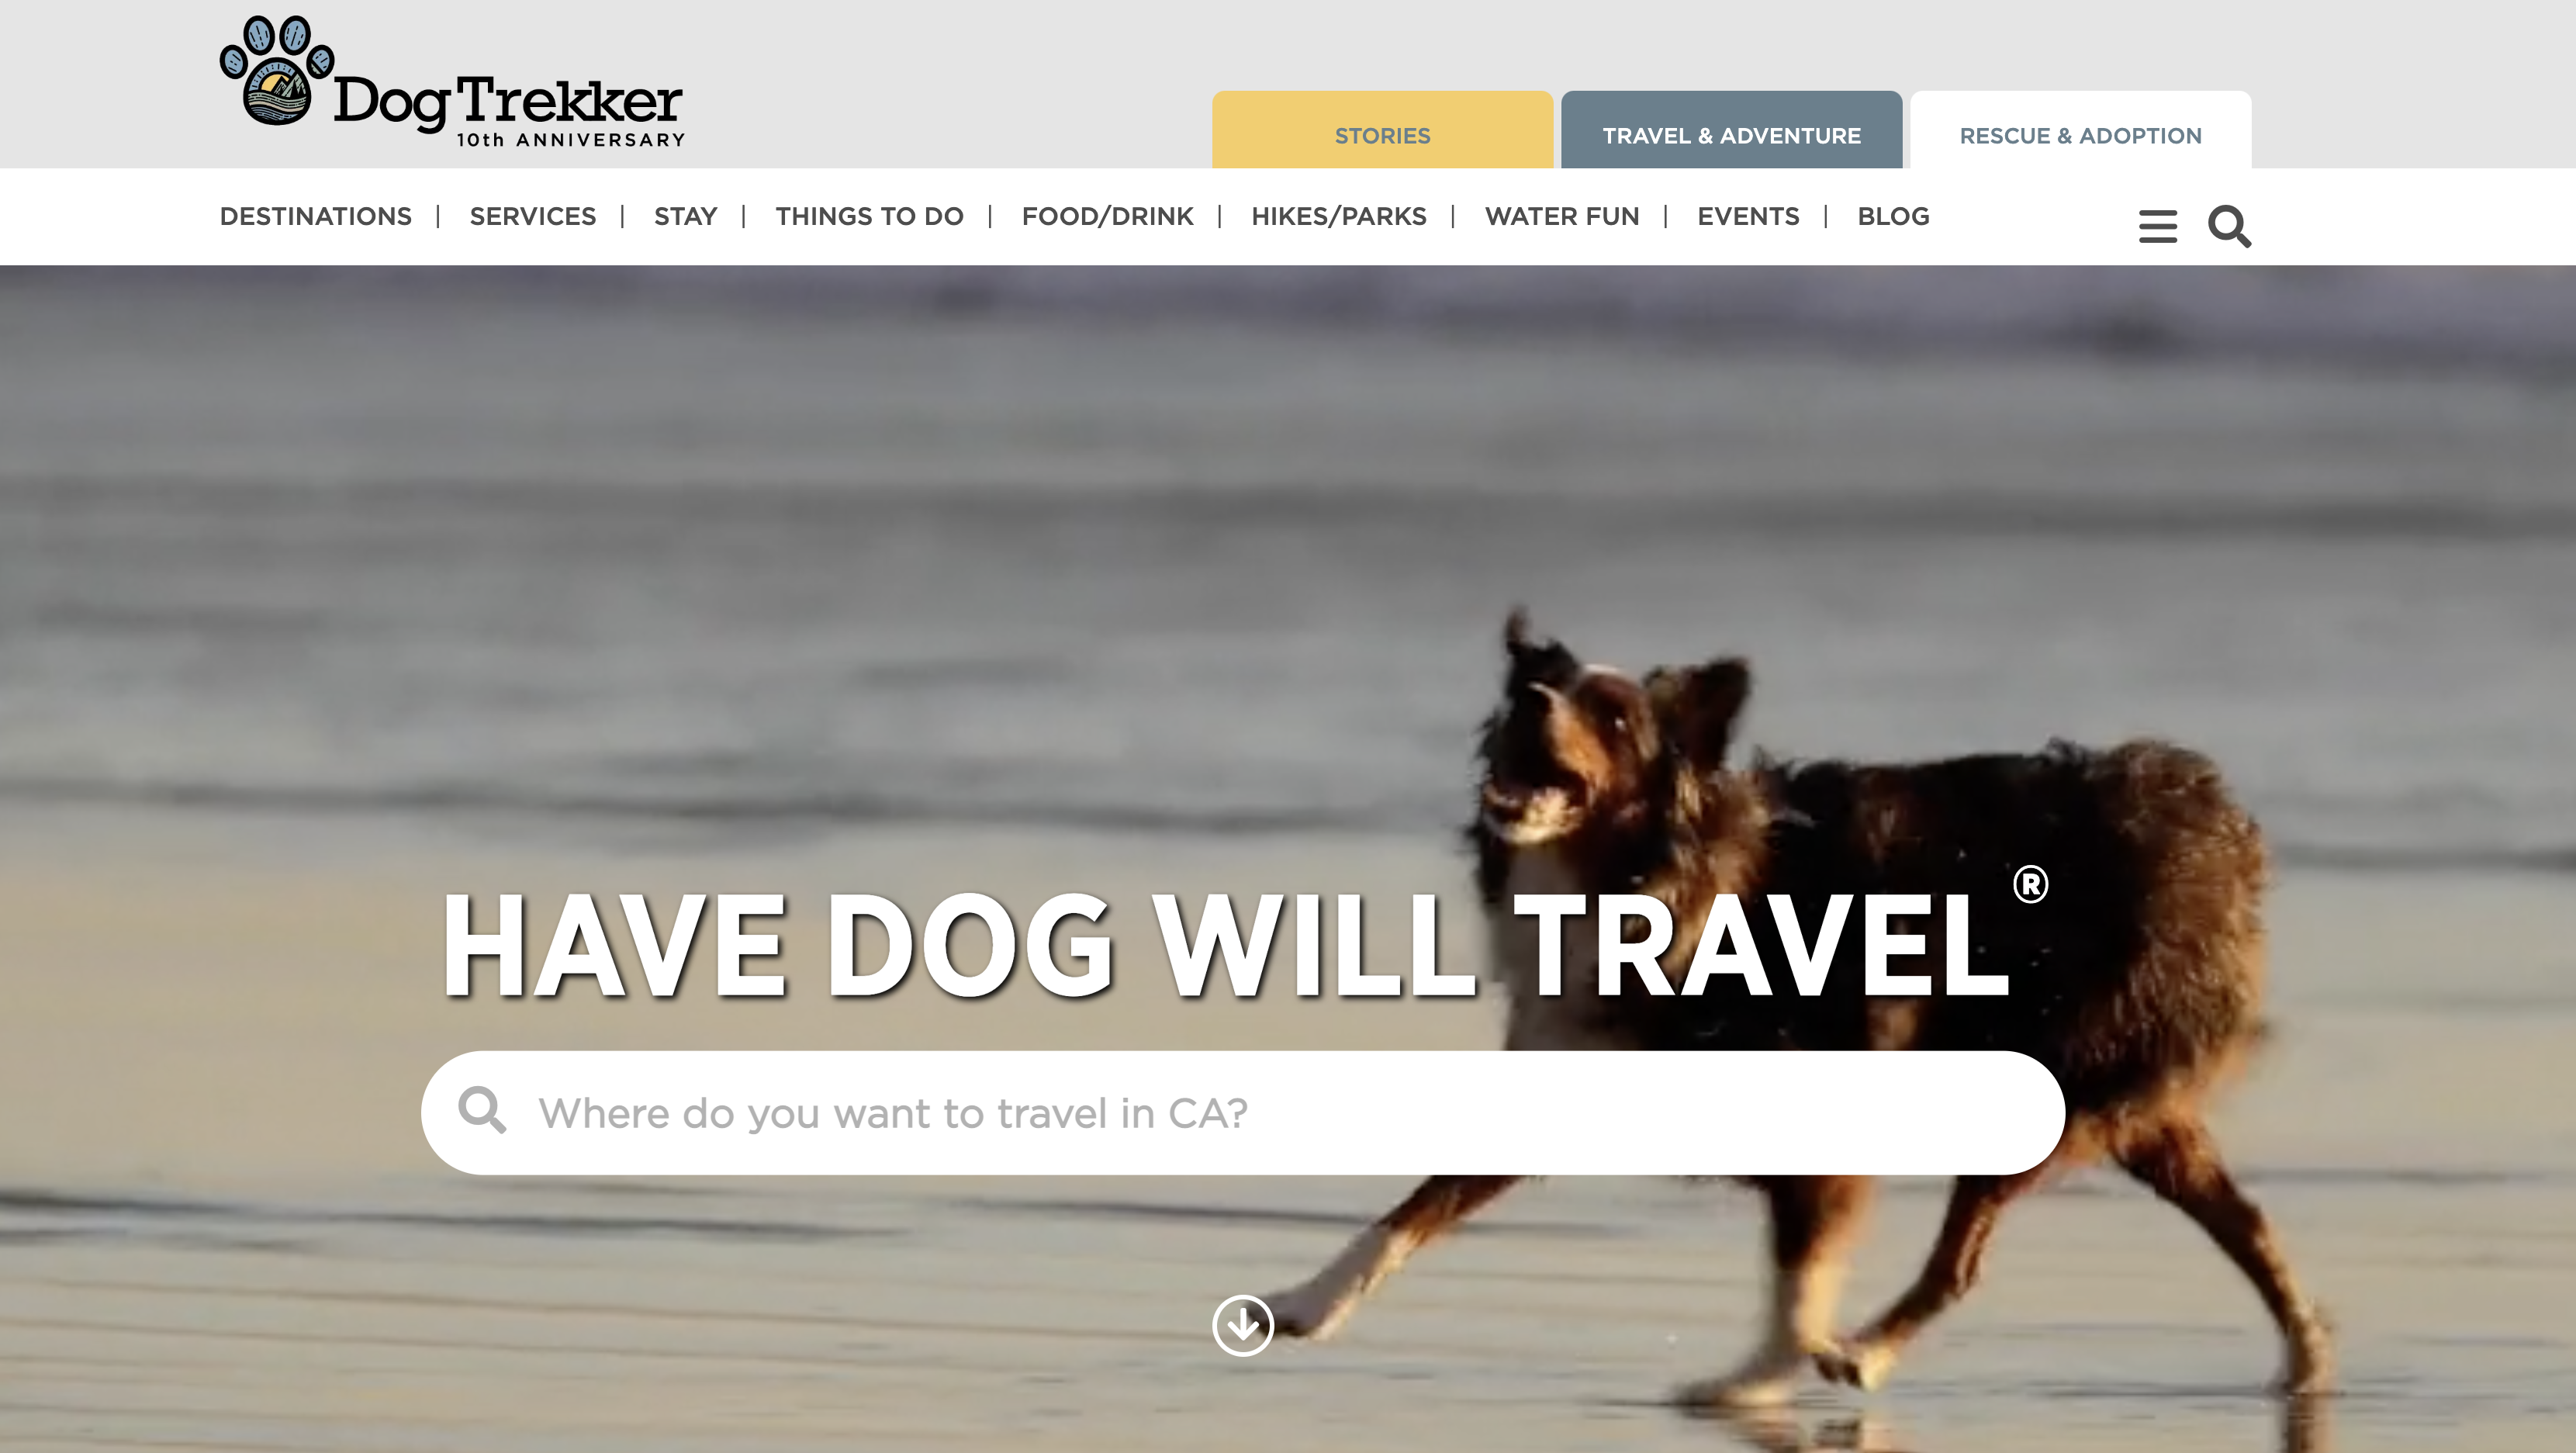 DogTrekker.com website with search bar